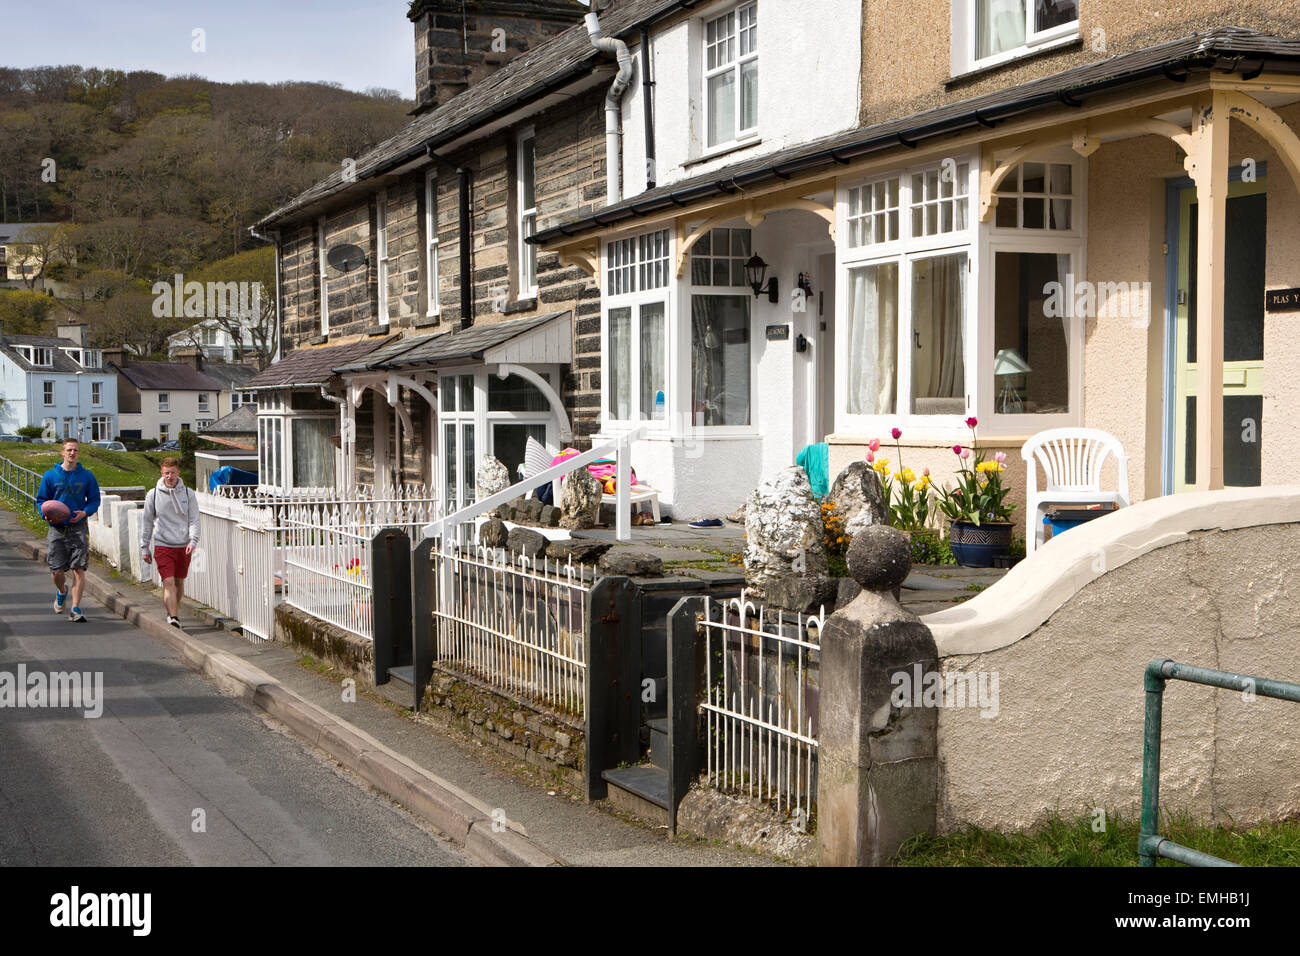 UK, Wales, Gwynedd, Porthmadog, Borth-Y-Gest, harbourside houses Stock Photo